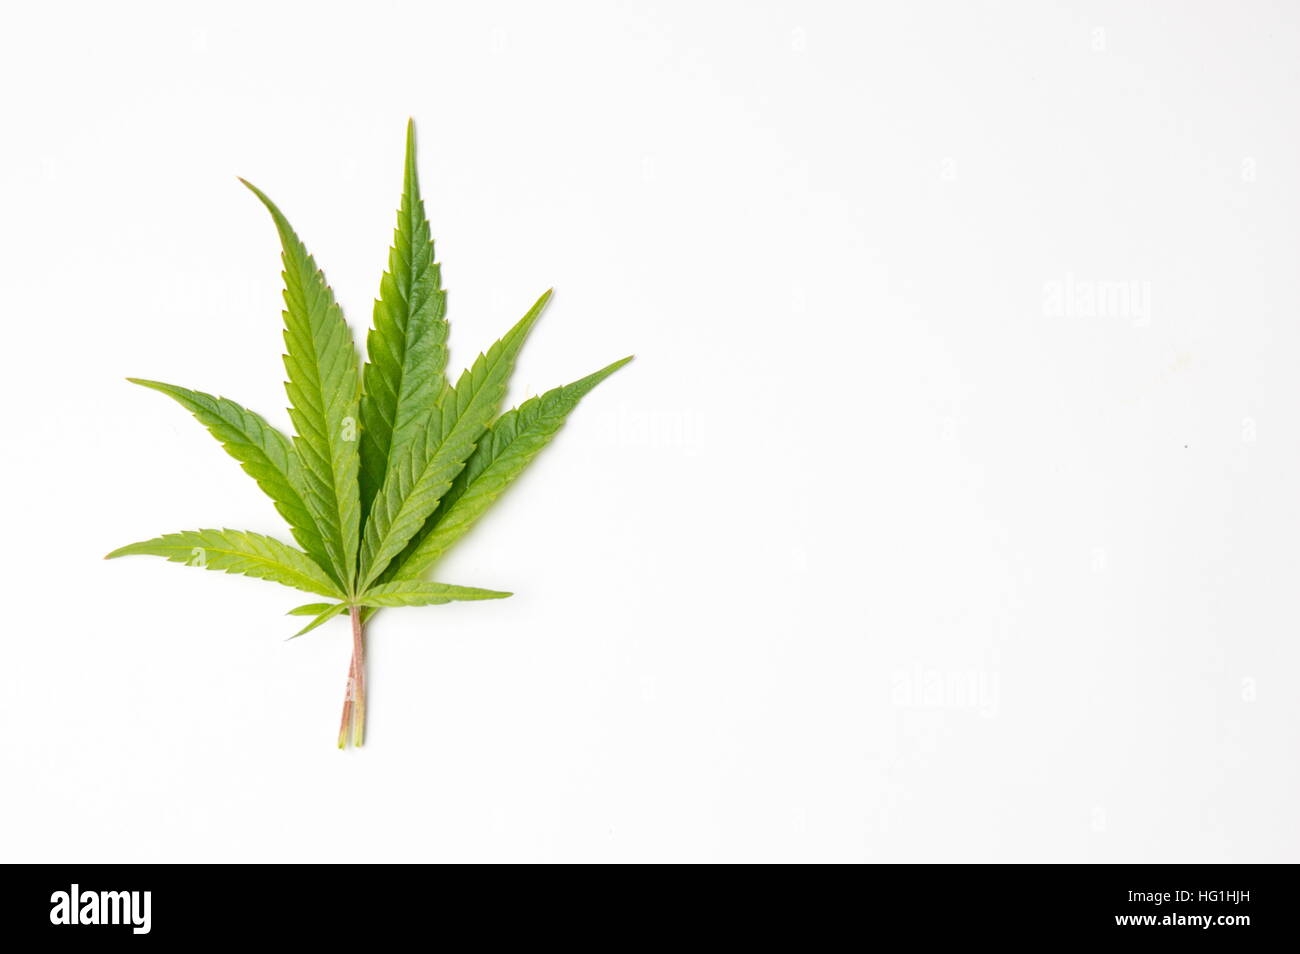 Fresh Marijuana green leaf on white background Stock Photo